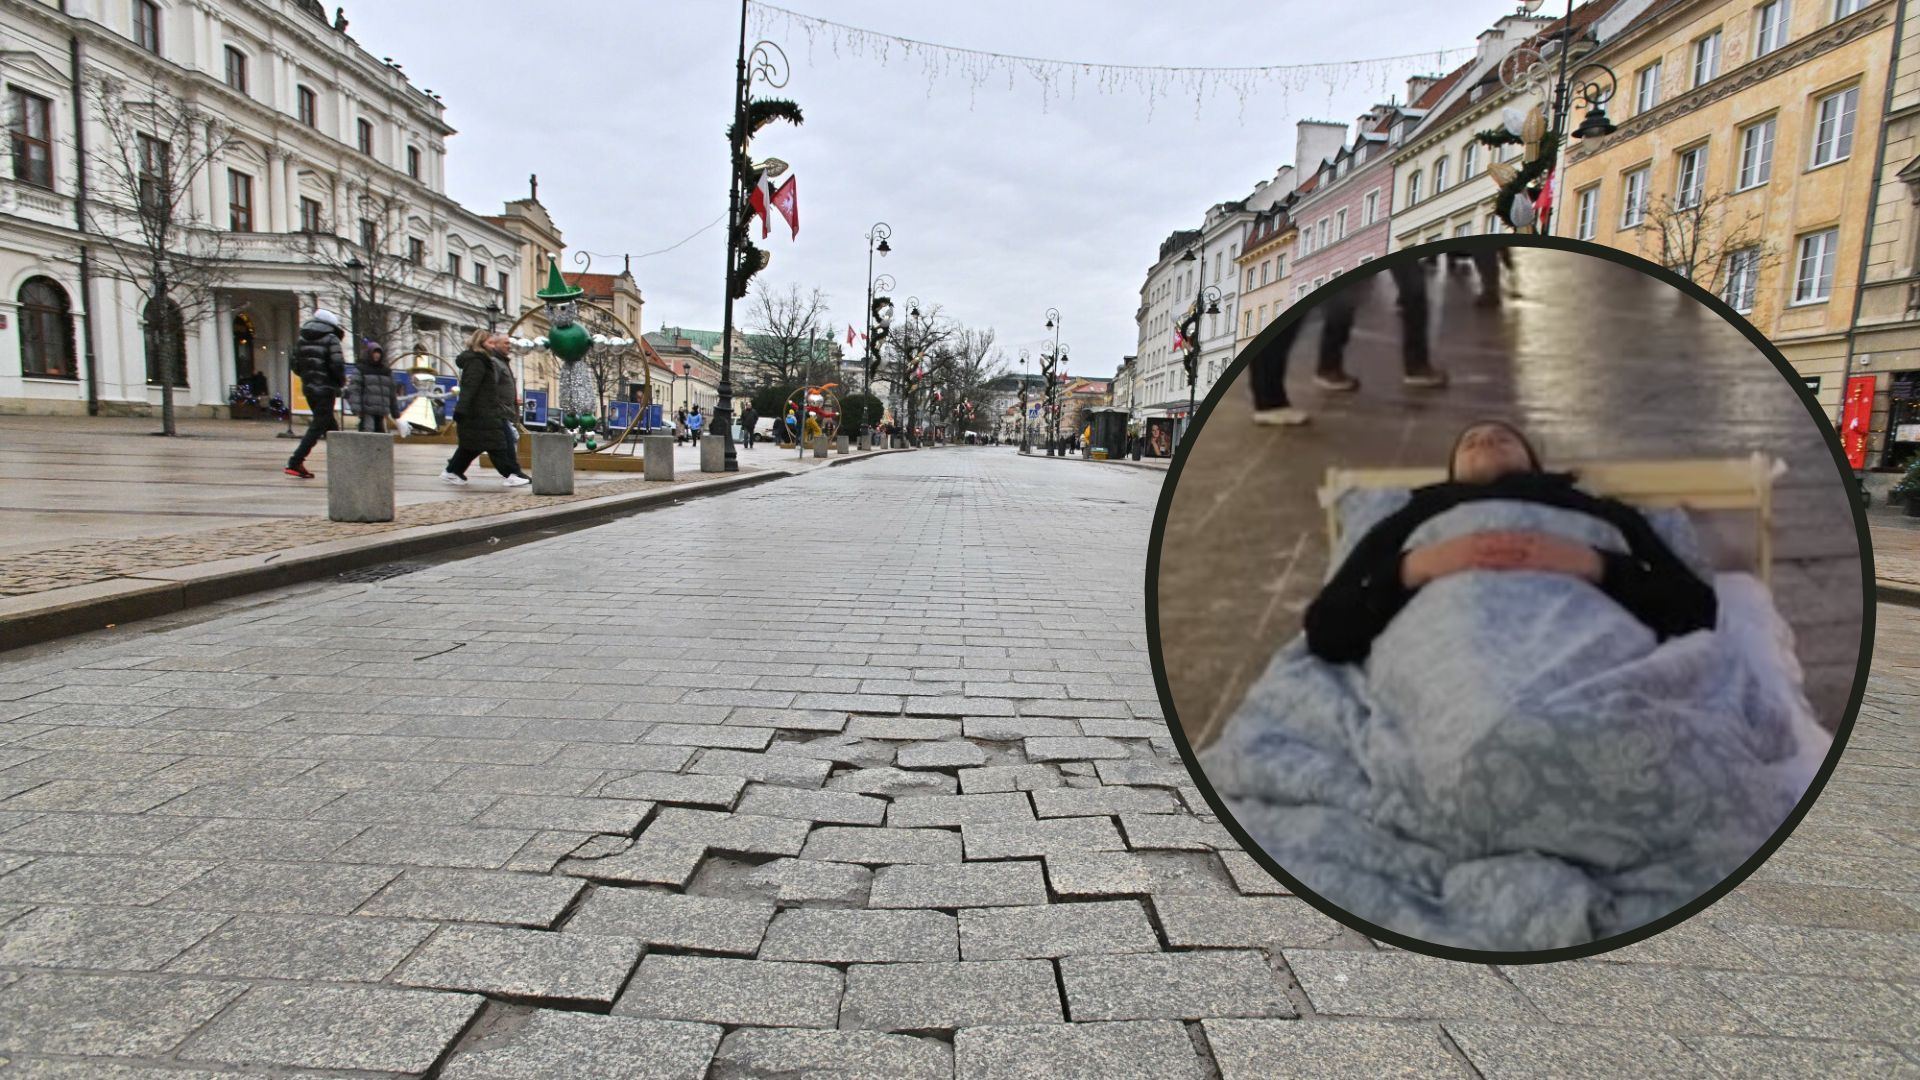 krakowskie przedmieście warszawa chodnik budynki, zdjęcie ilustracyjne